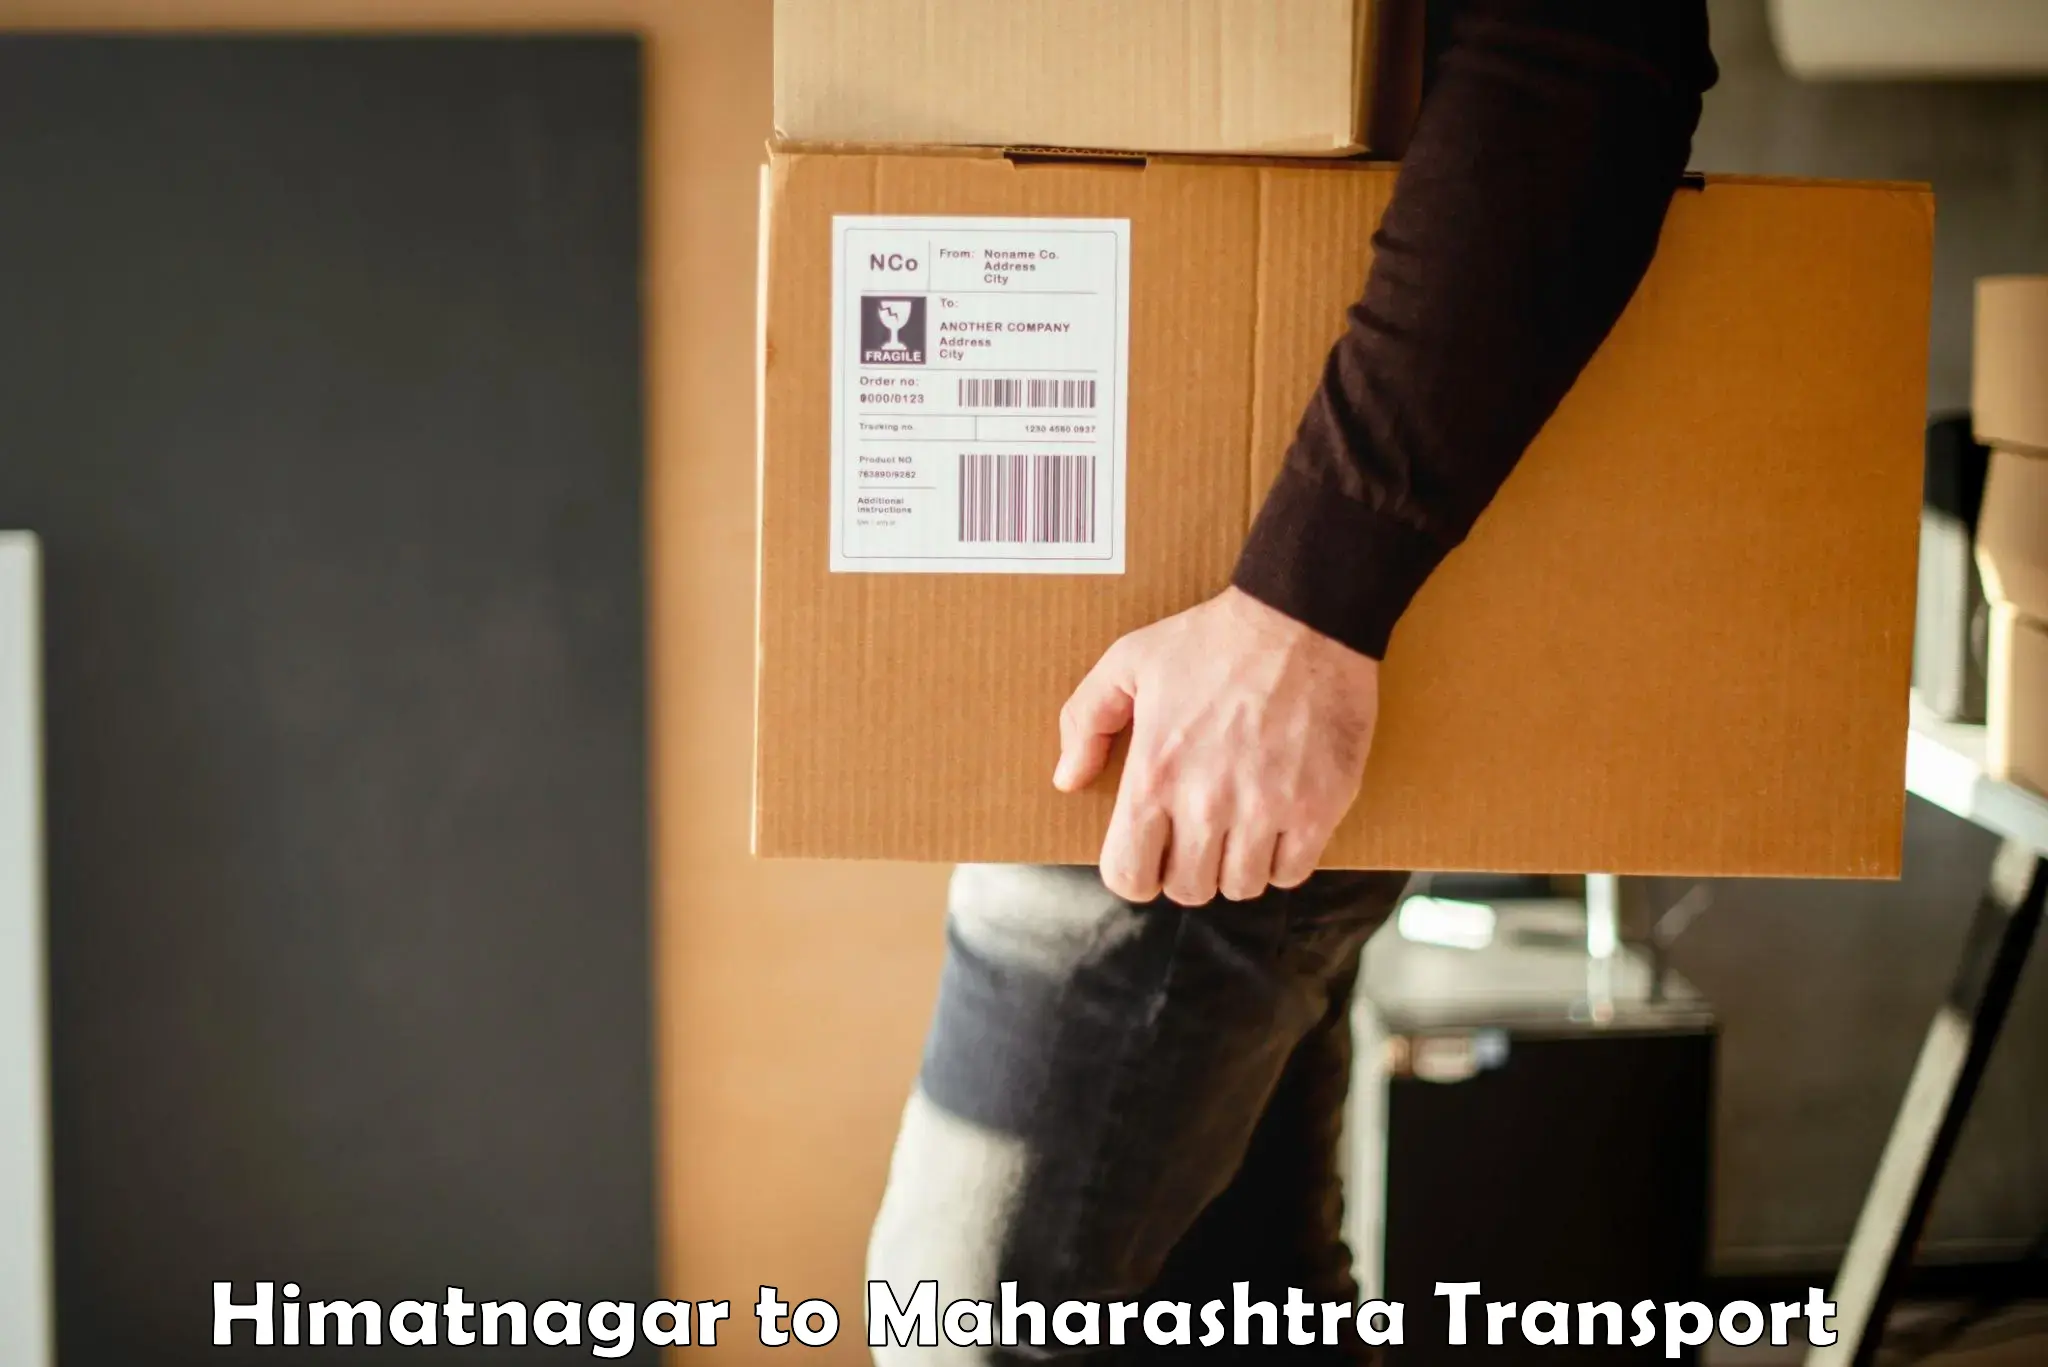 Air freight transport services Himatnagar to Pandharkawada